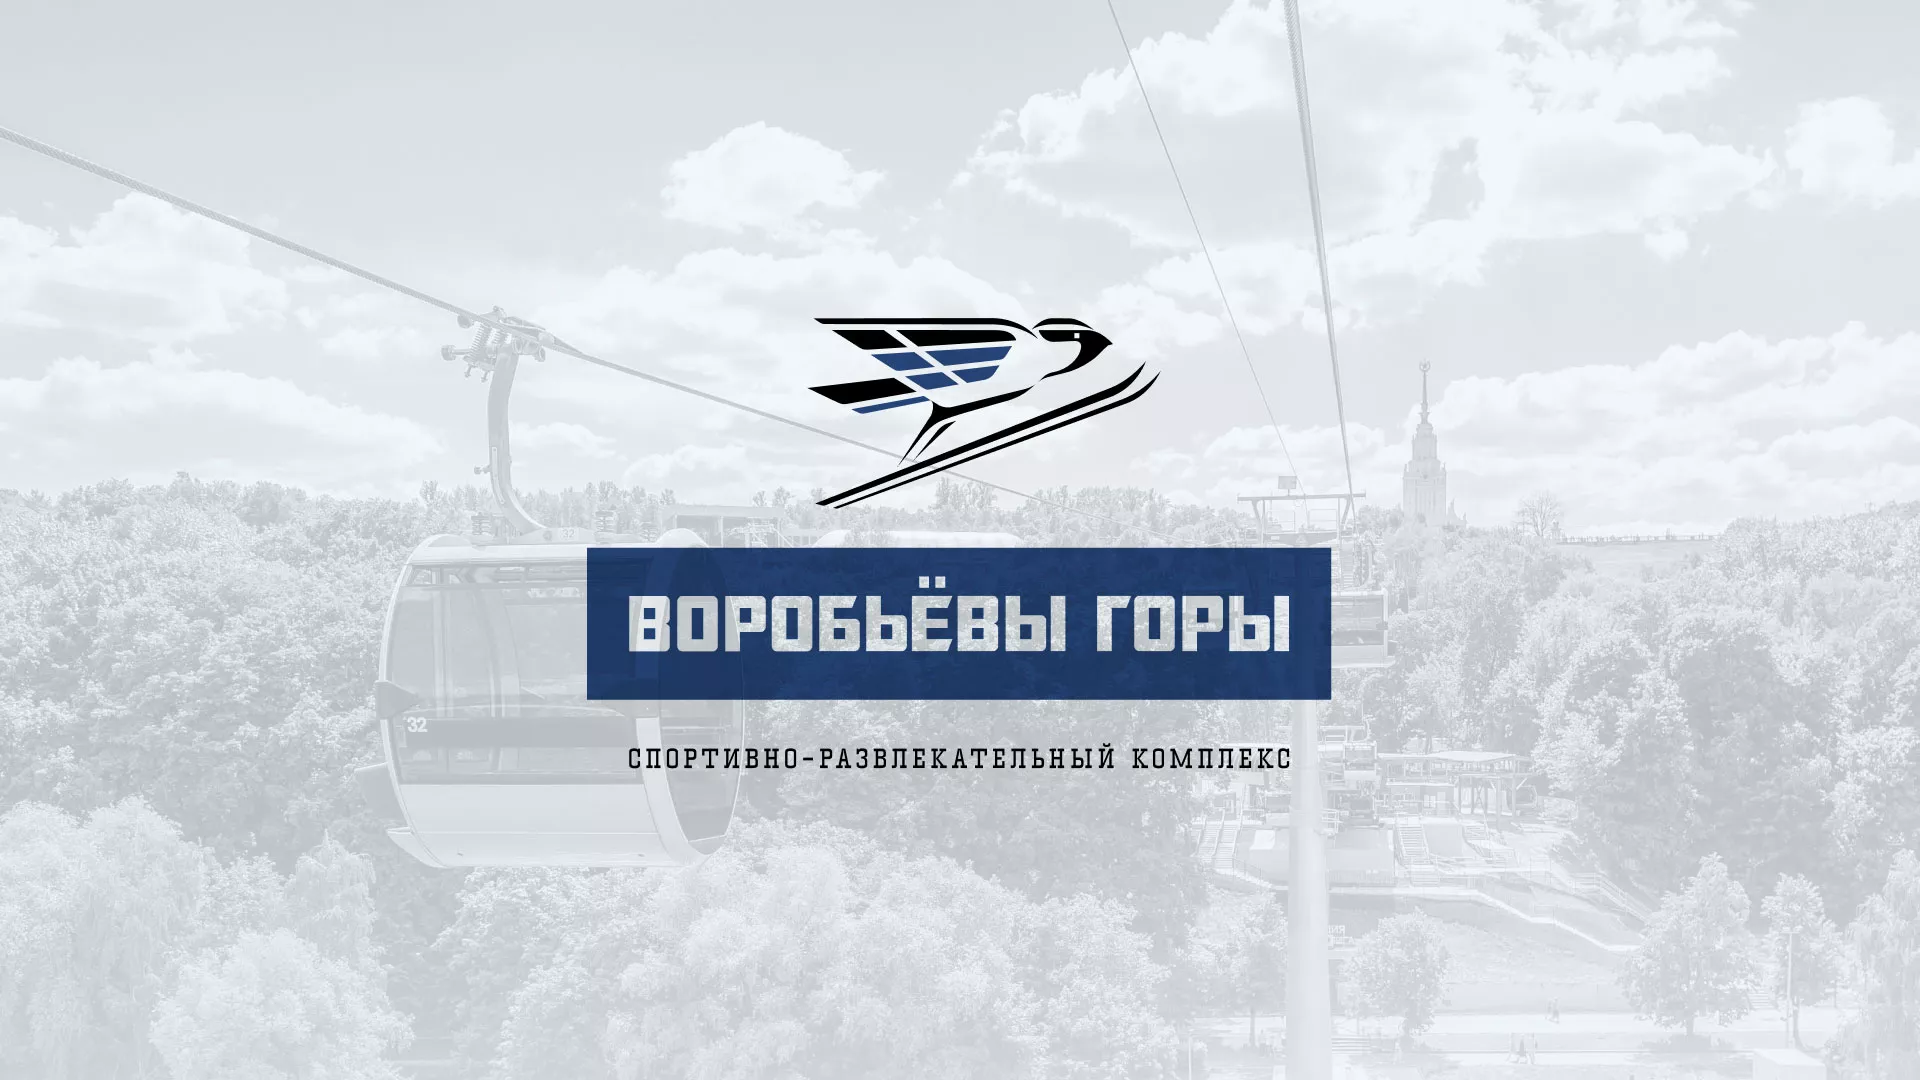 Разработка сайта в Дмитриеве для спортивно-развлекательного комплекса «Воробьёвы горы»